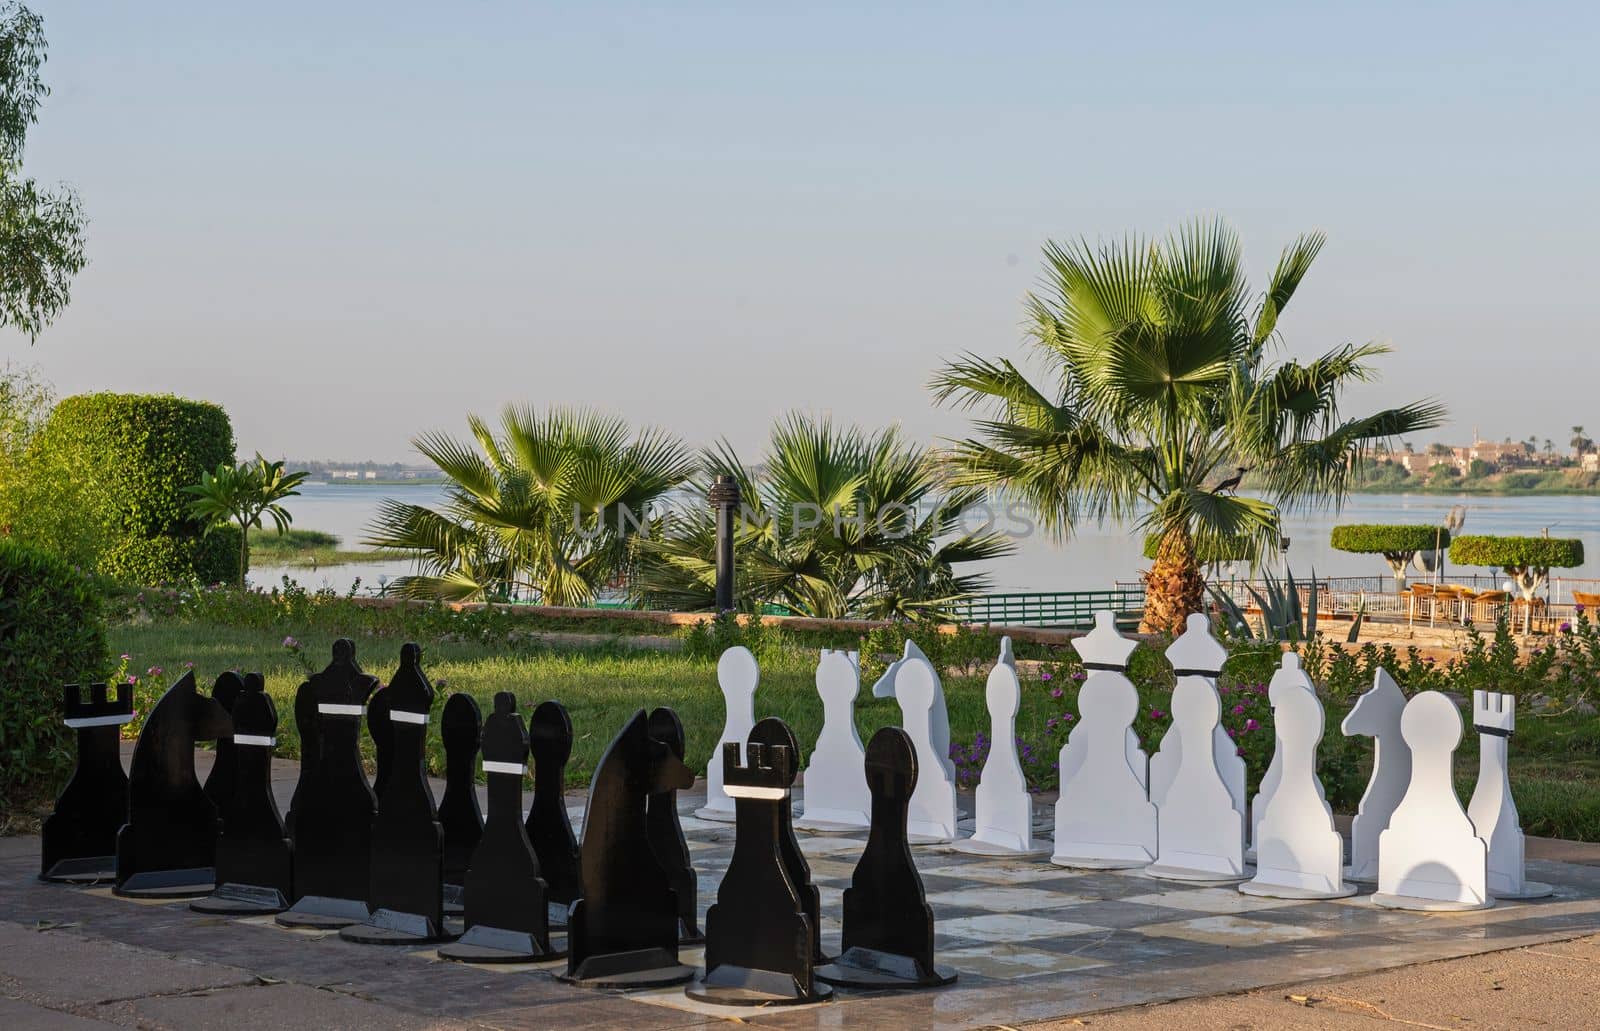 Large chess set outdoor in luxury hotel resort by paulvinten